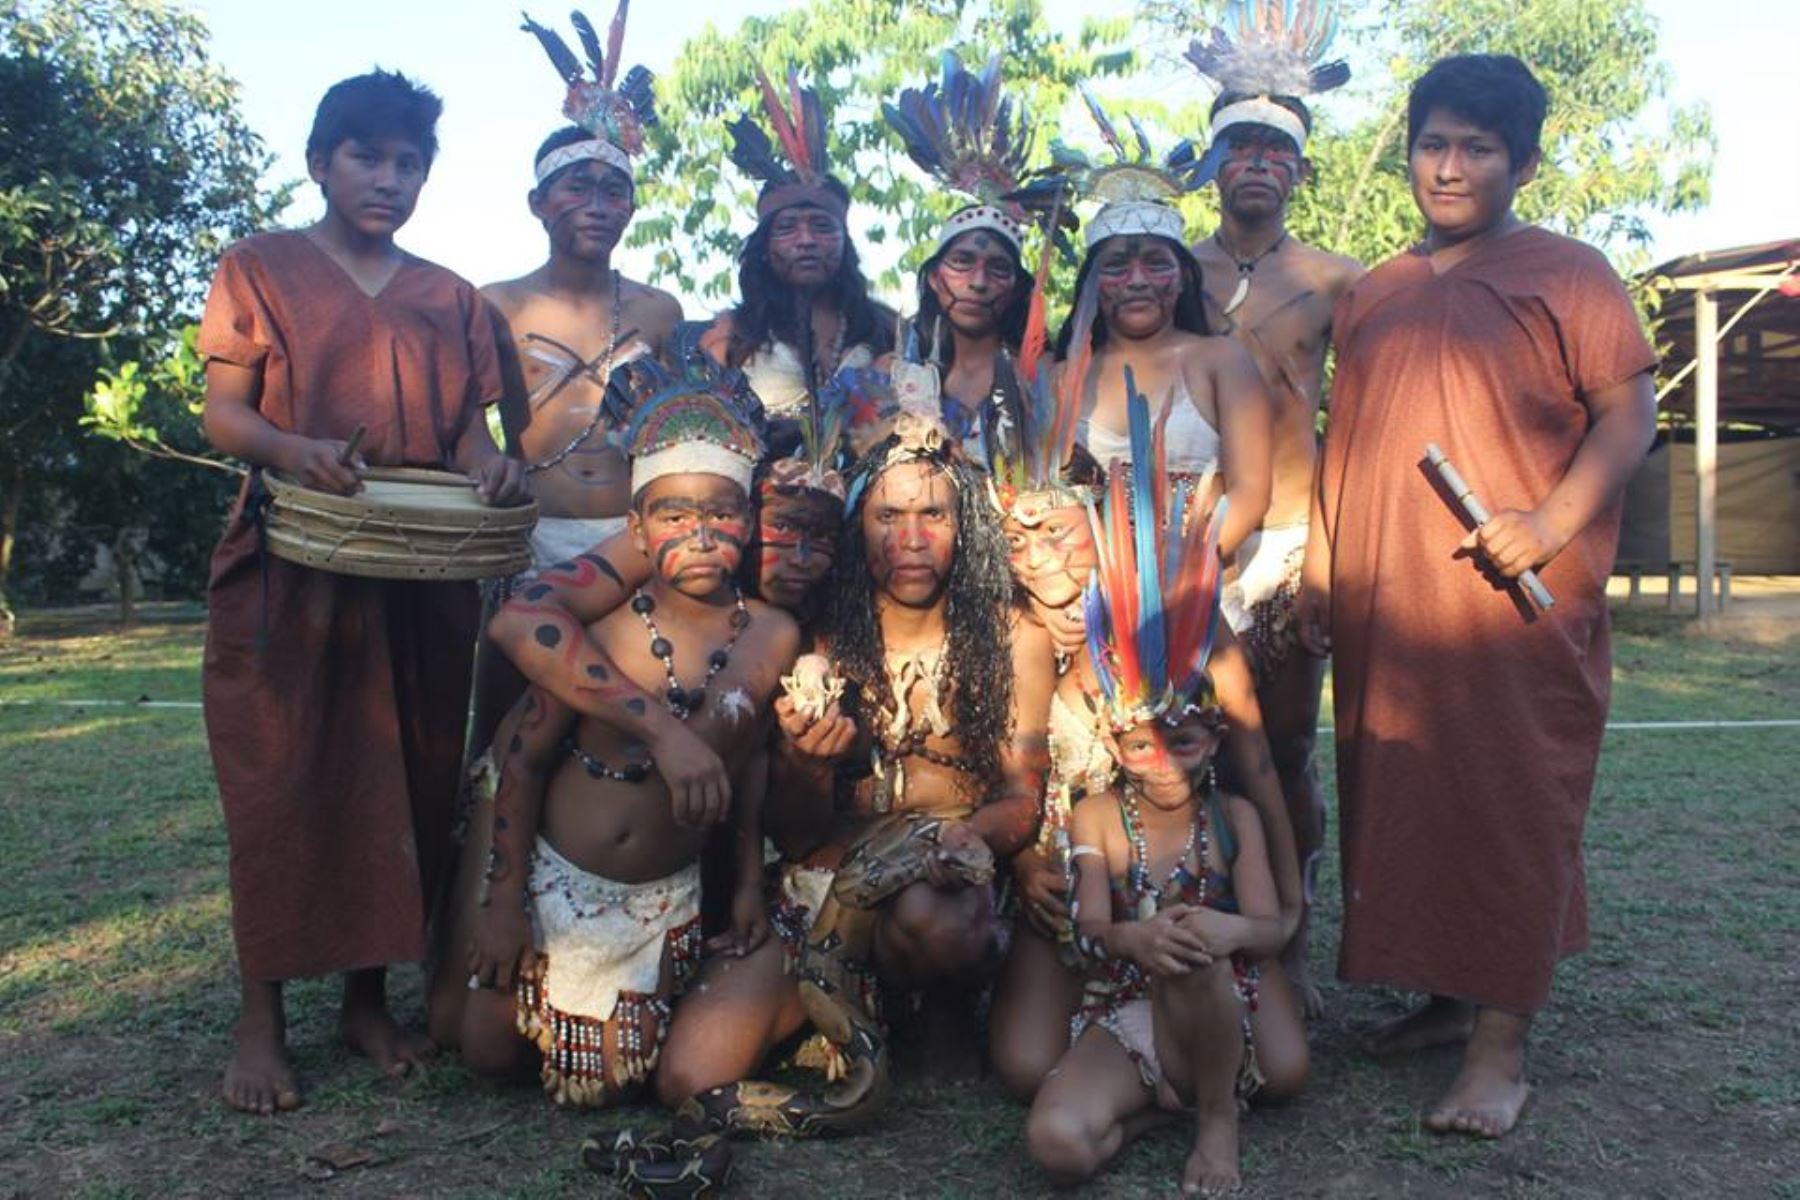 Mejoran servicios turísticos de Reserva Tambopata para diversificar oferta turística en Madre de Dios.